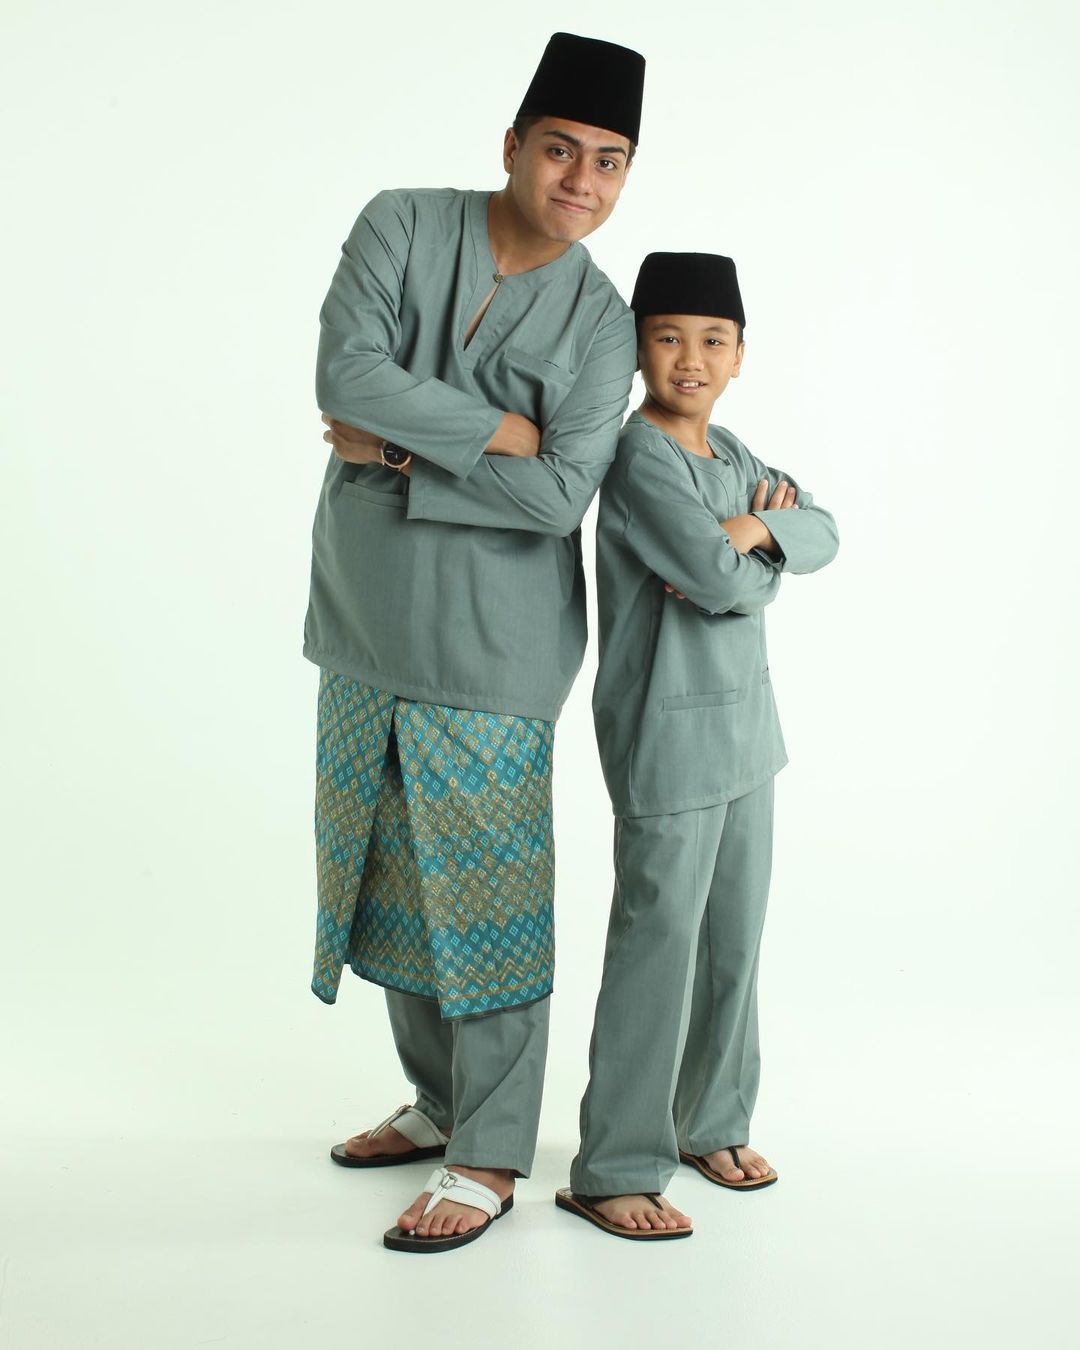 8 Online Stores To Buy Matching Baju Kurung For The Family This Hari Raya